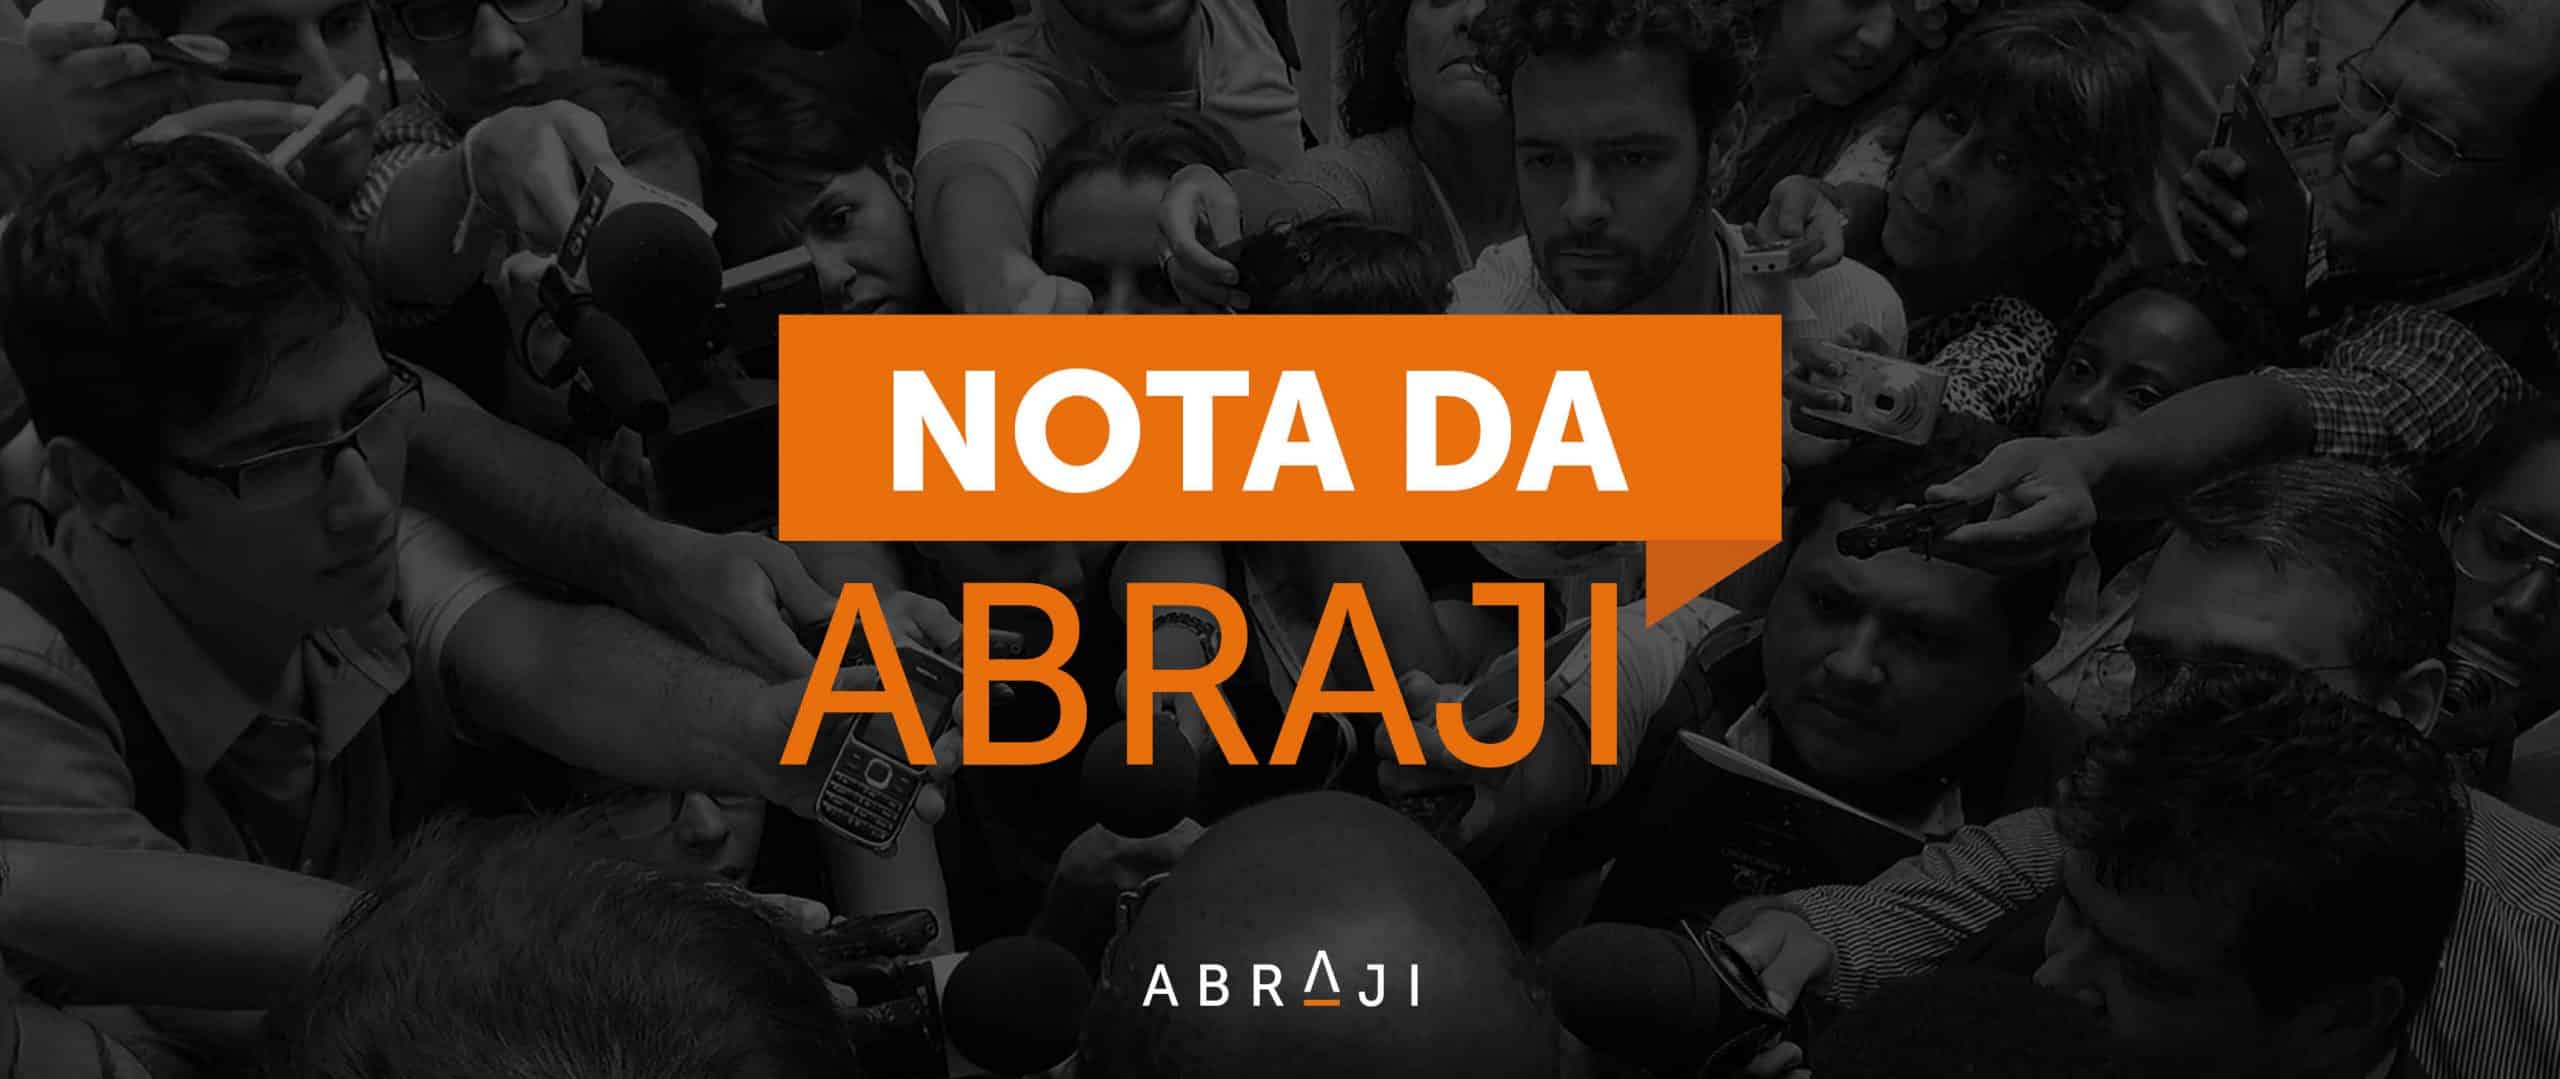 Abraji condena las acusaciones infundadas y calumniosas contra periodista